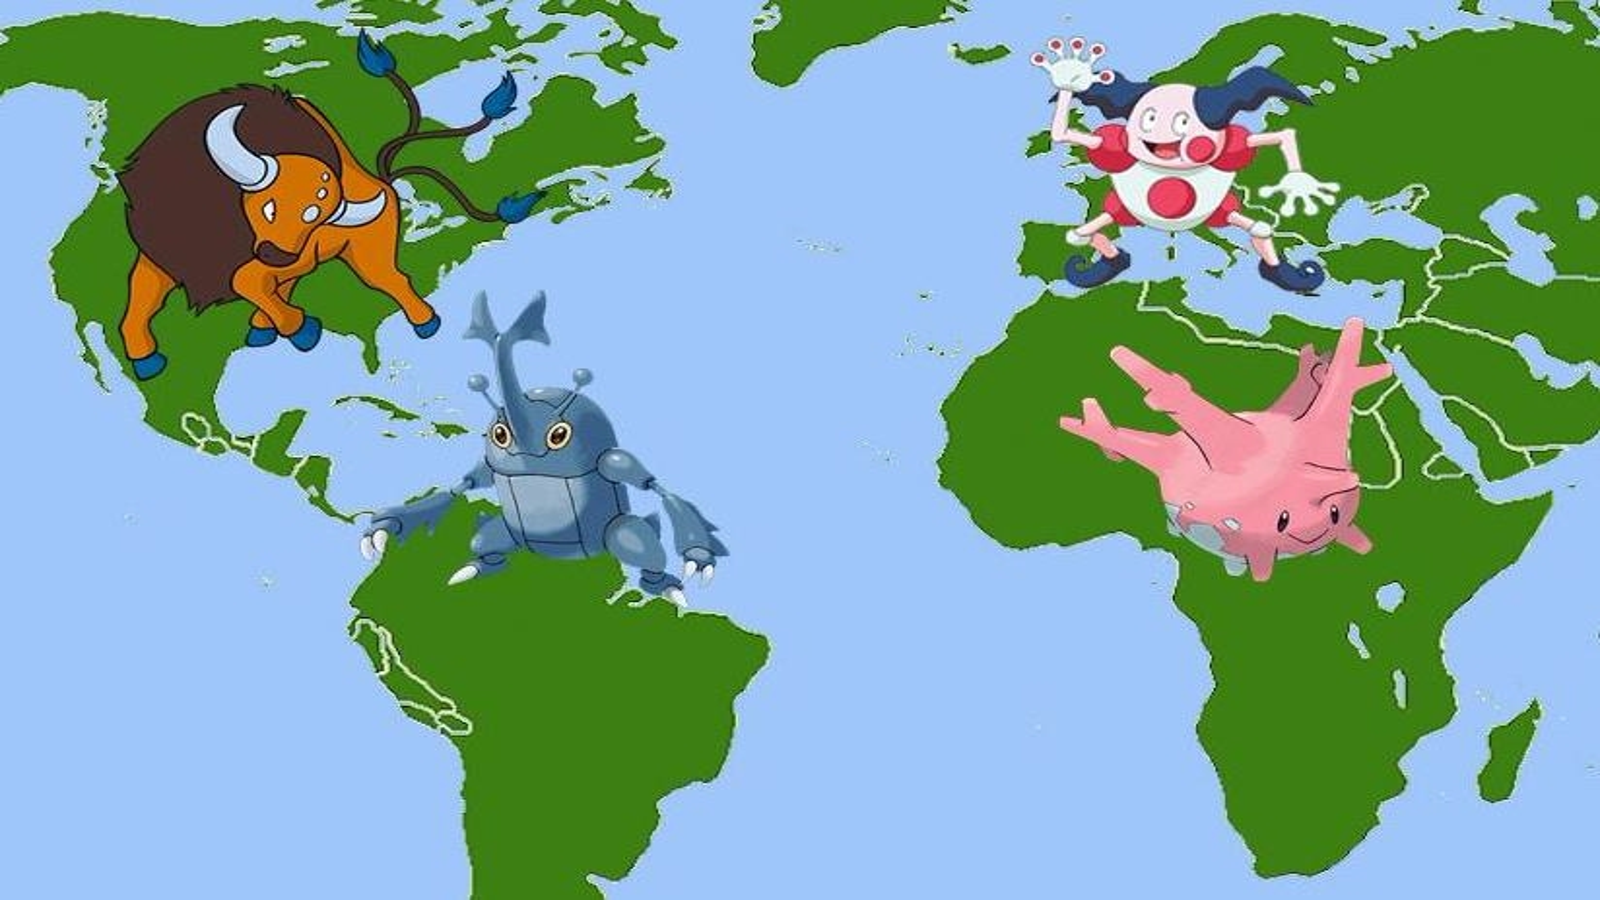 O que é o Pokémon Go e por que está causando tanto furor no mundo